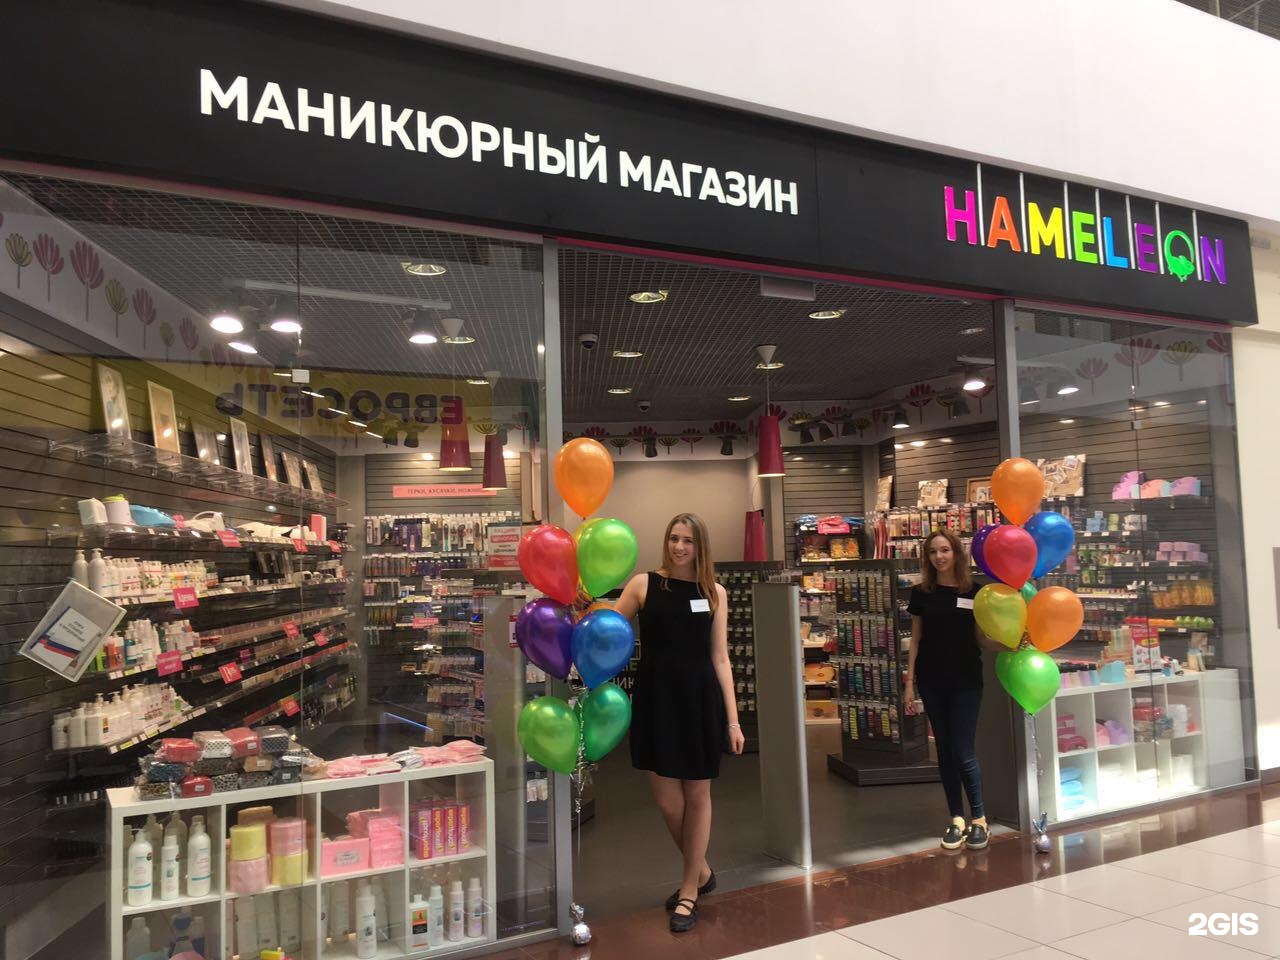 Хамелеон екатеринбург. Хамелеон магазин. Хамелеон маникюрный магазин. Хамелеон Уфа магазин. Хамелеон магазин для ногтей Новосибирск.